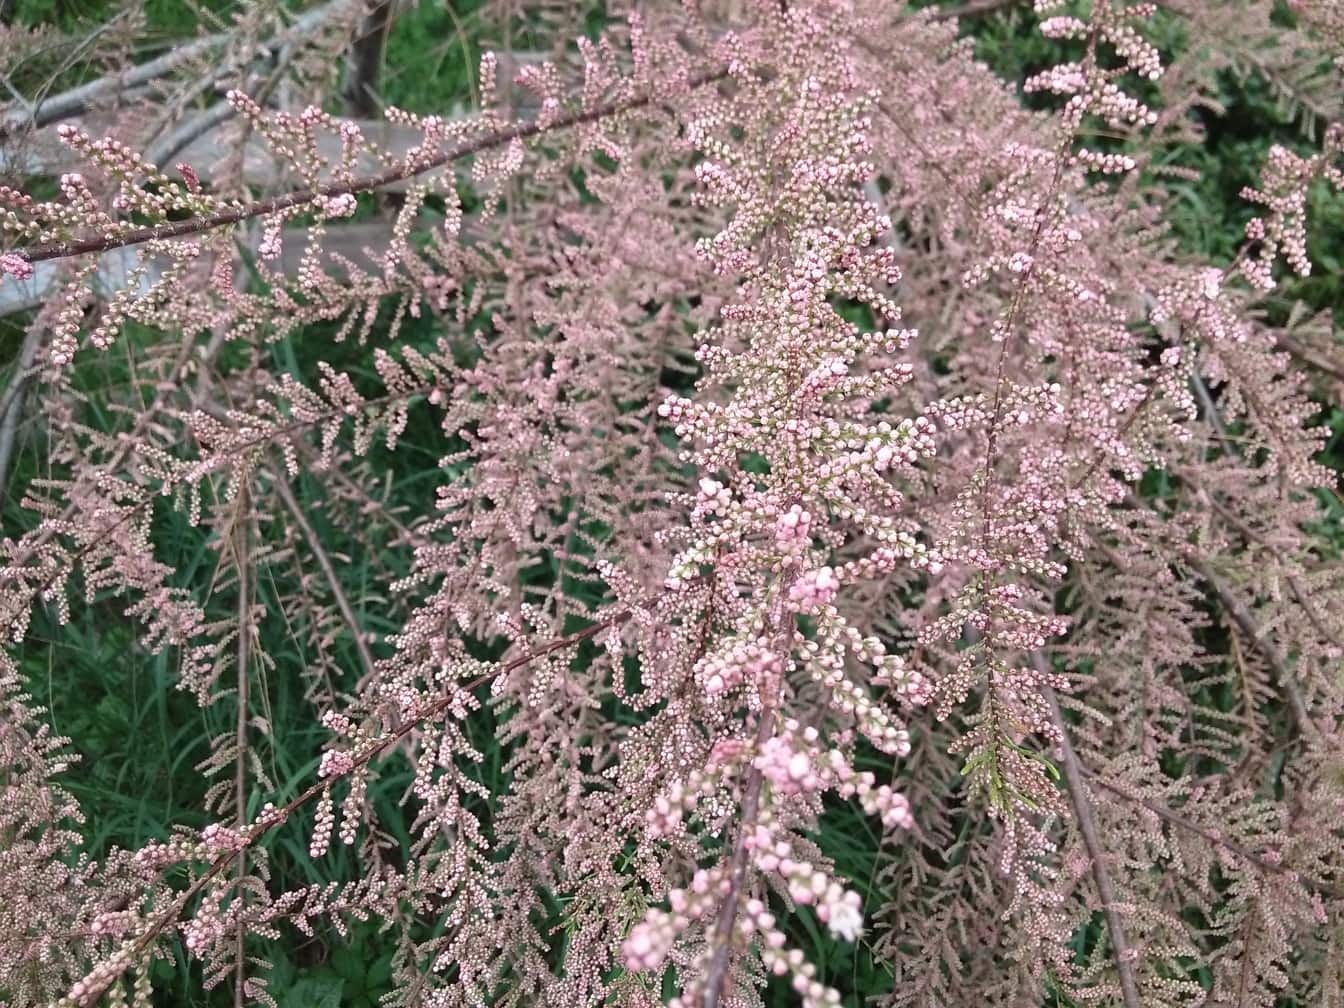 Cabang-cabang berbunga dari pohon tamariska, cedar garam (genus Tamarix)